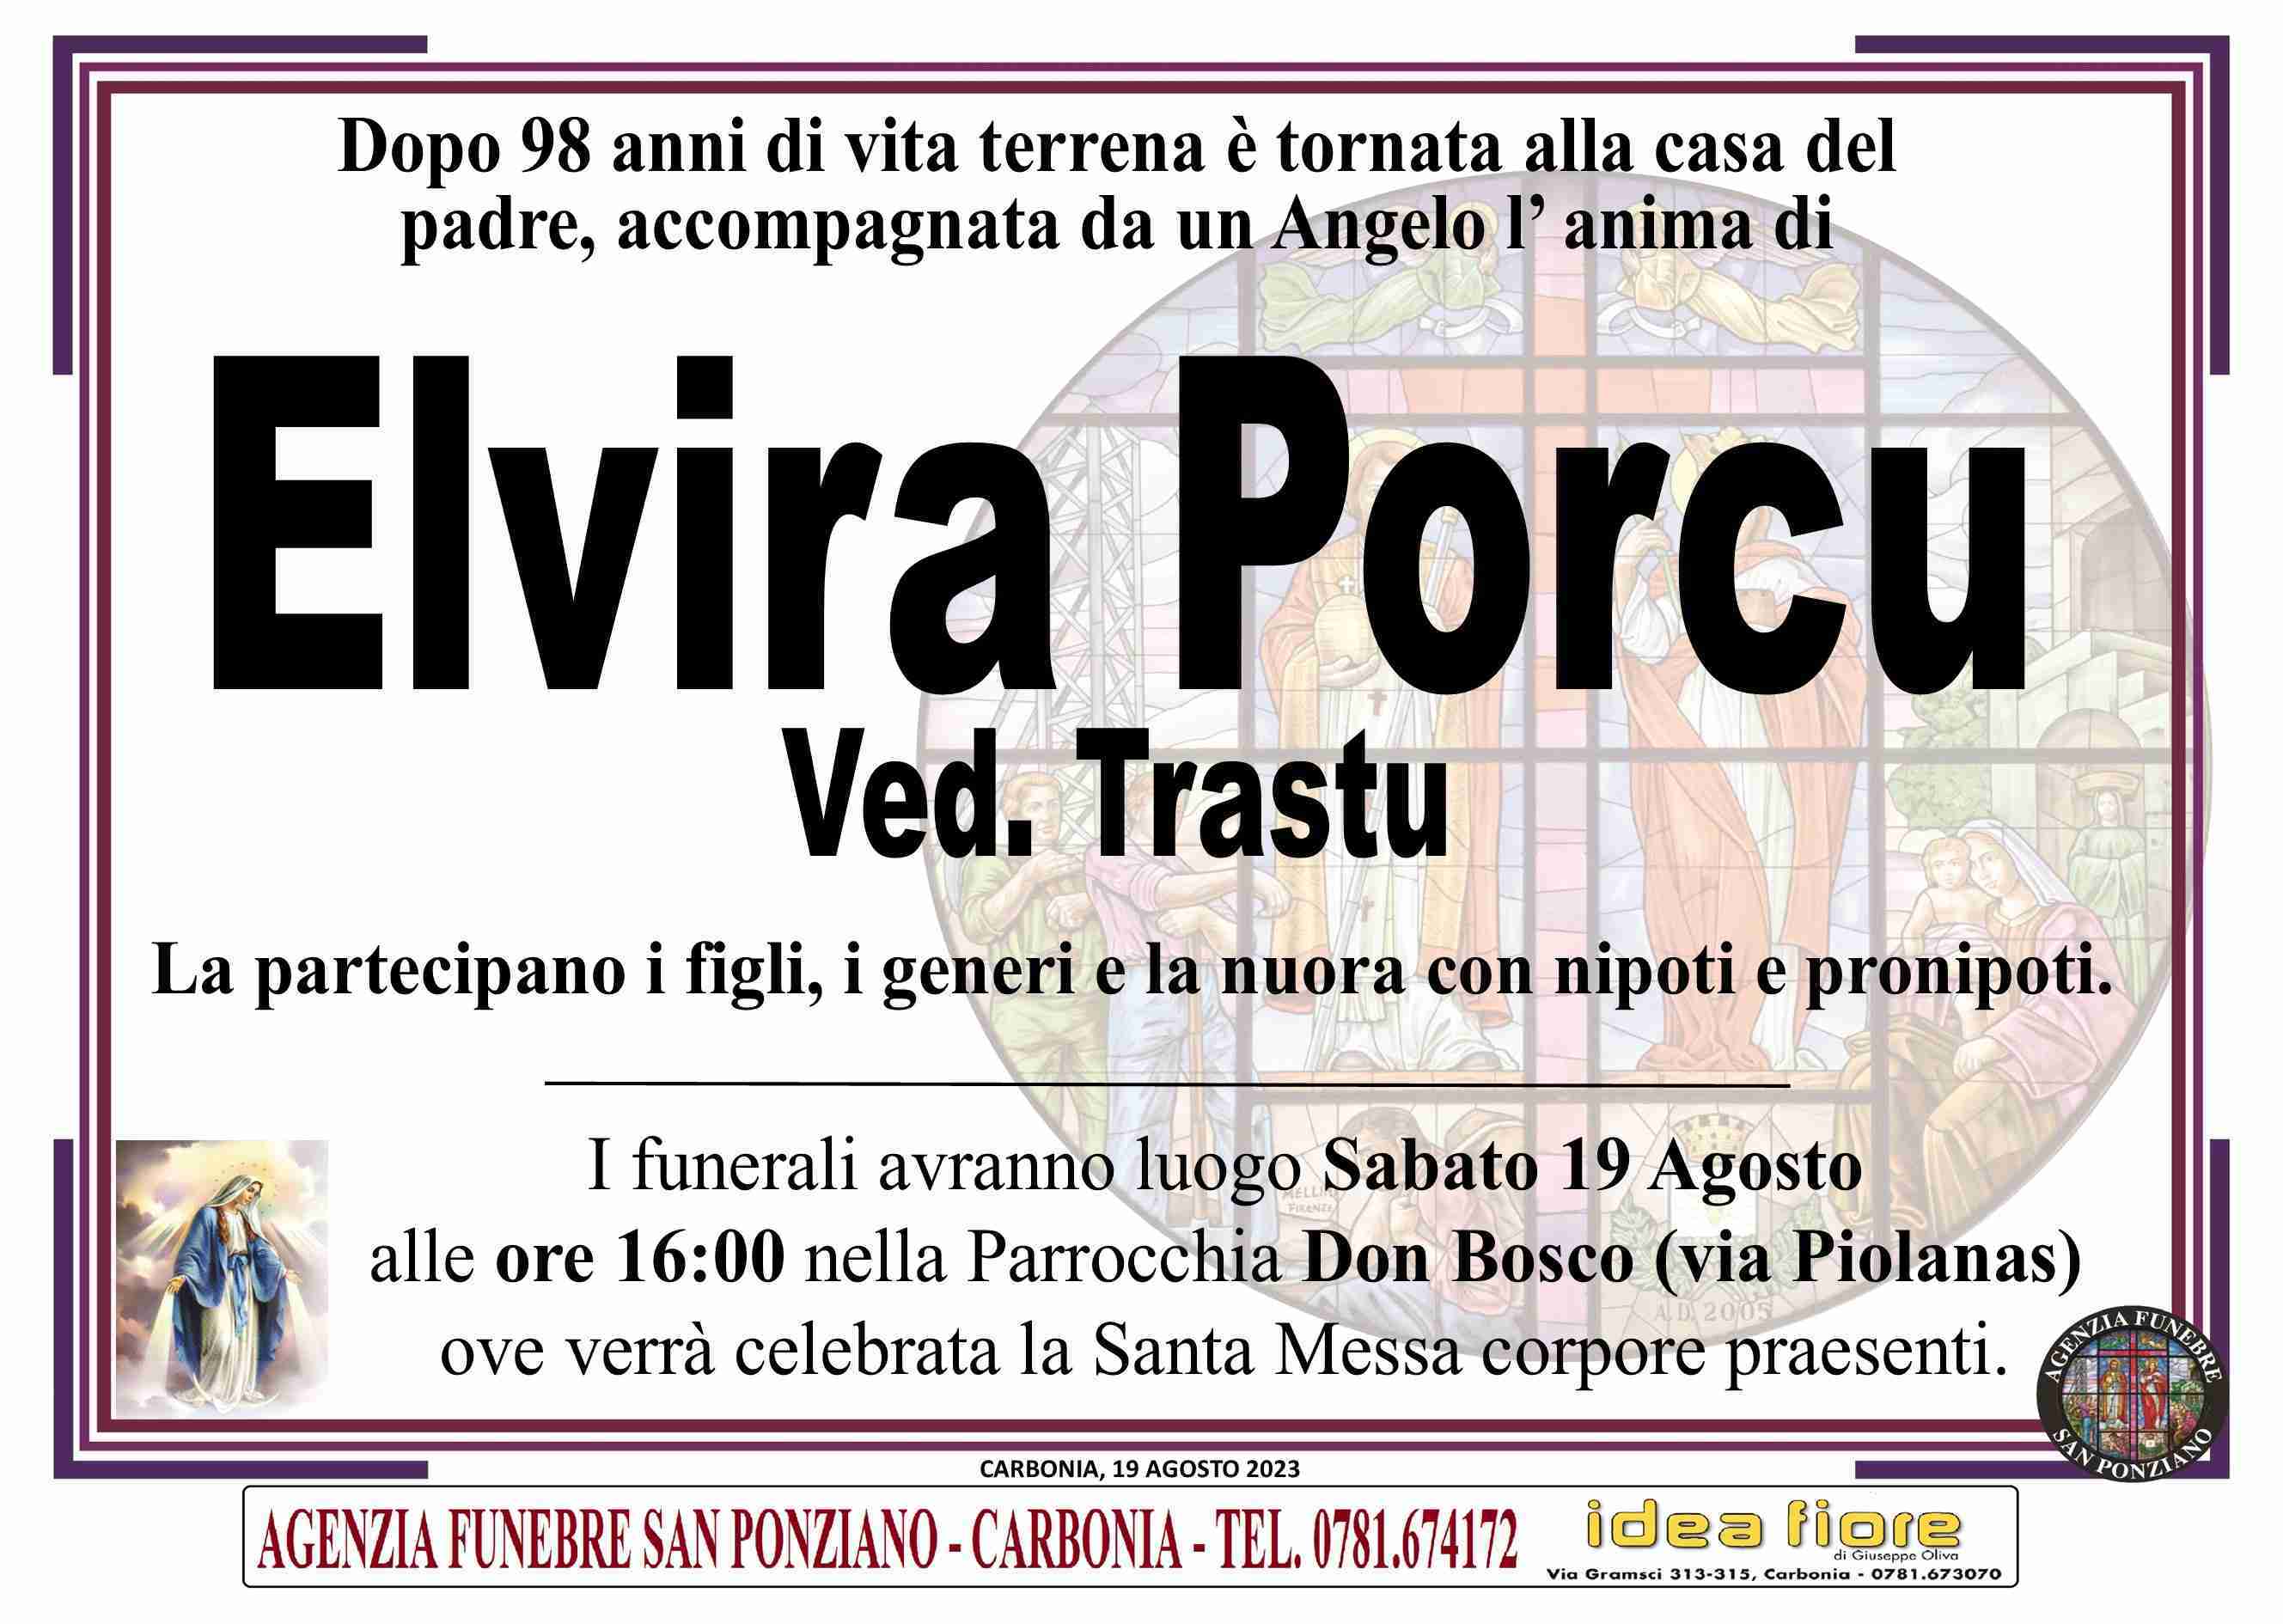 Elvira Porcu